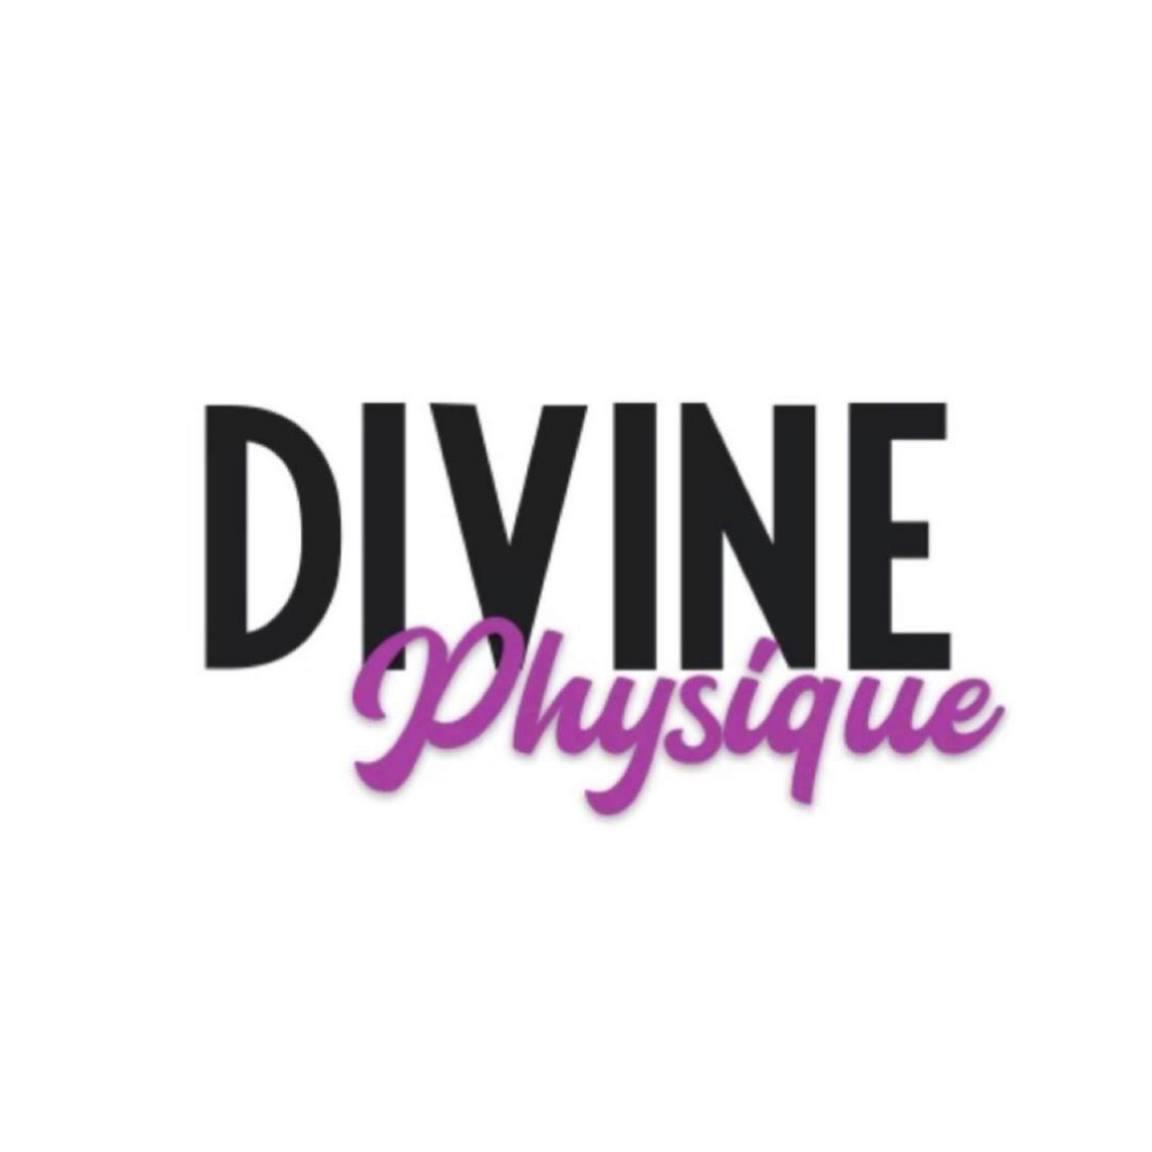 Divine Physique